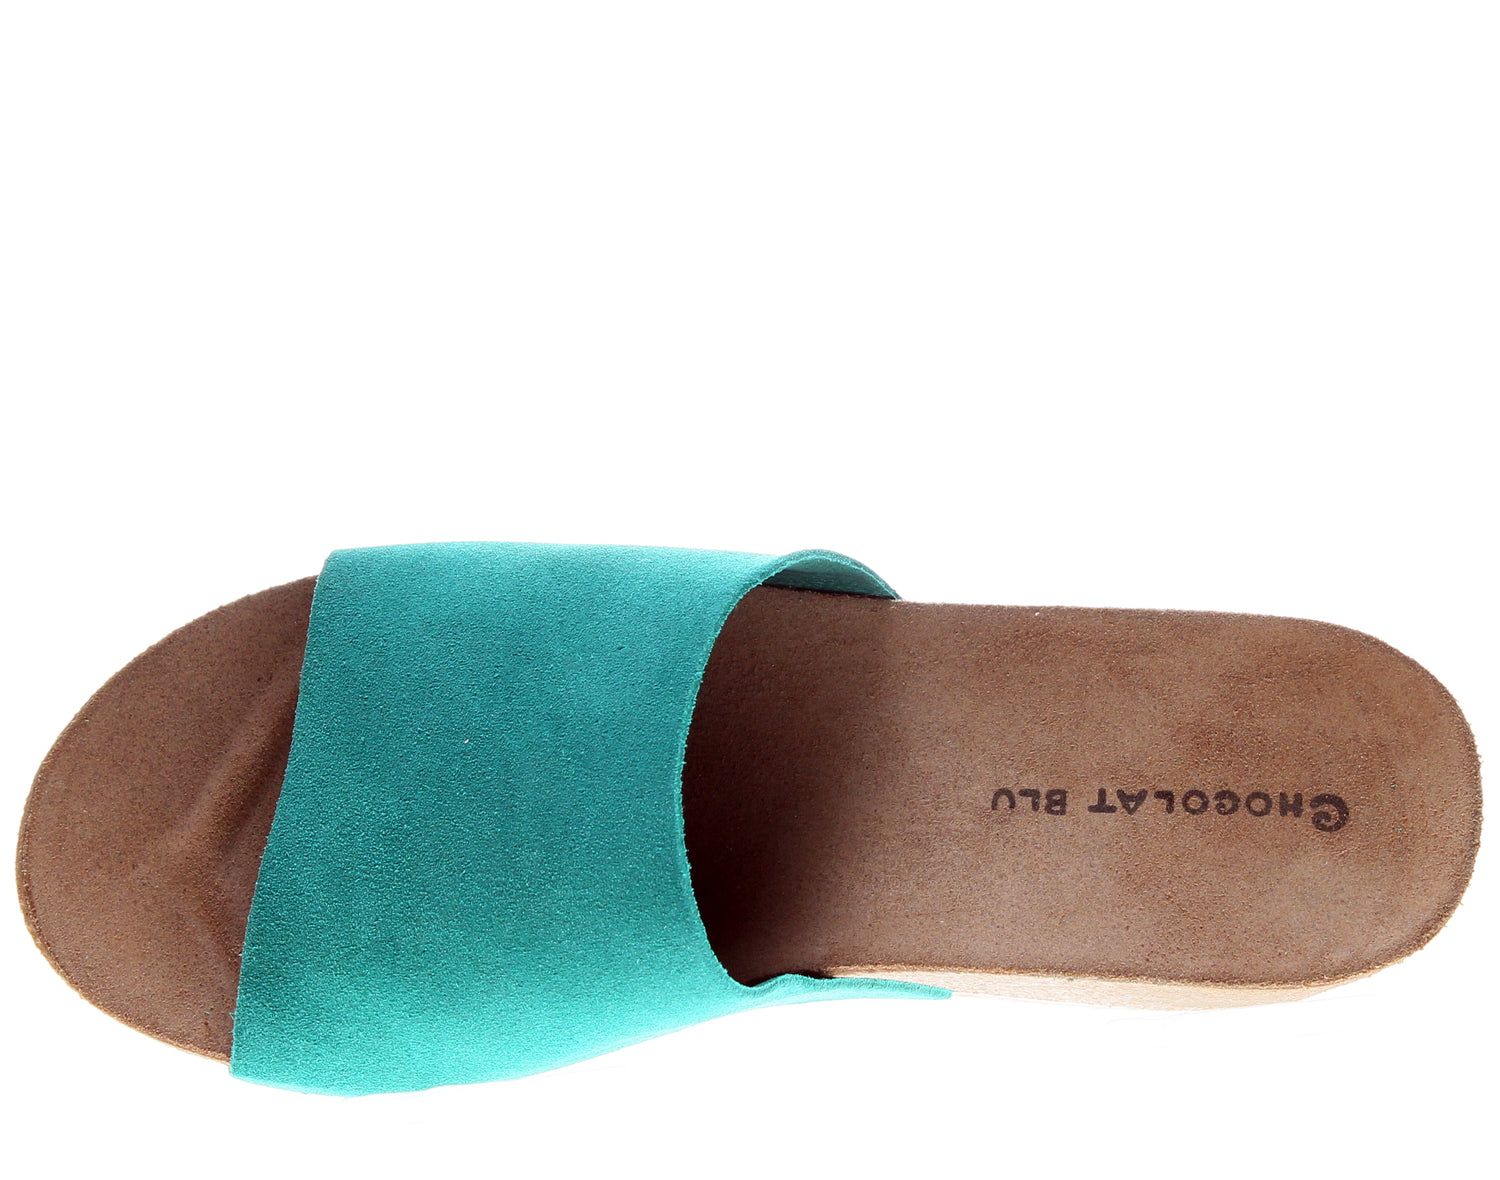 Chocolat Blu Riverside Wedge Women's Sandal